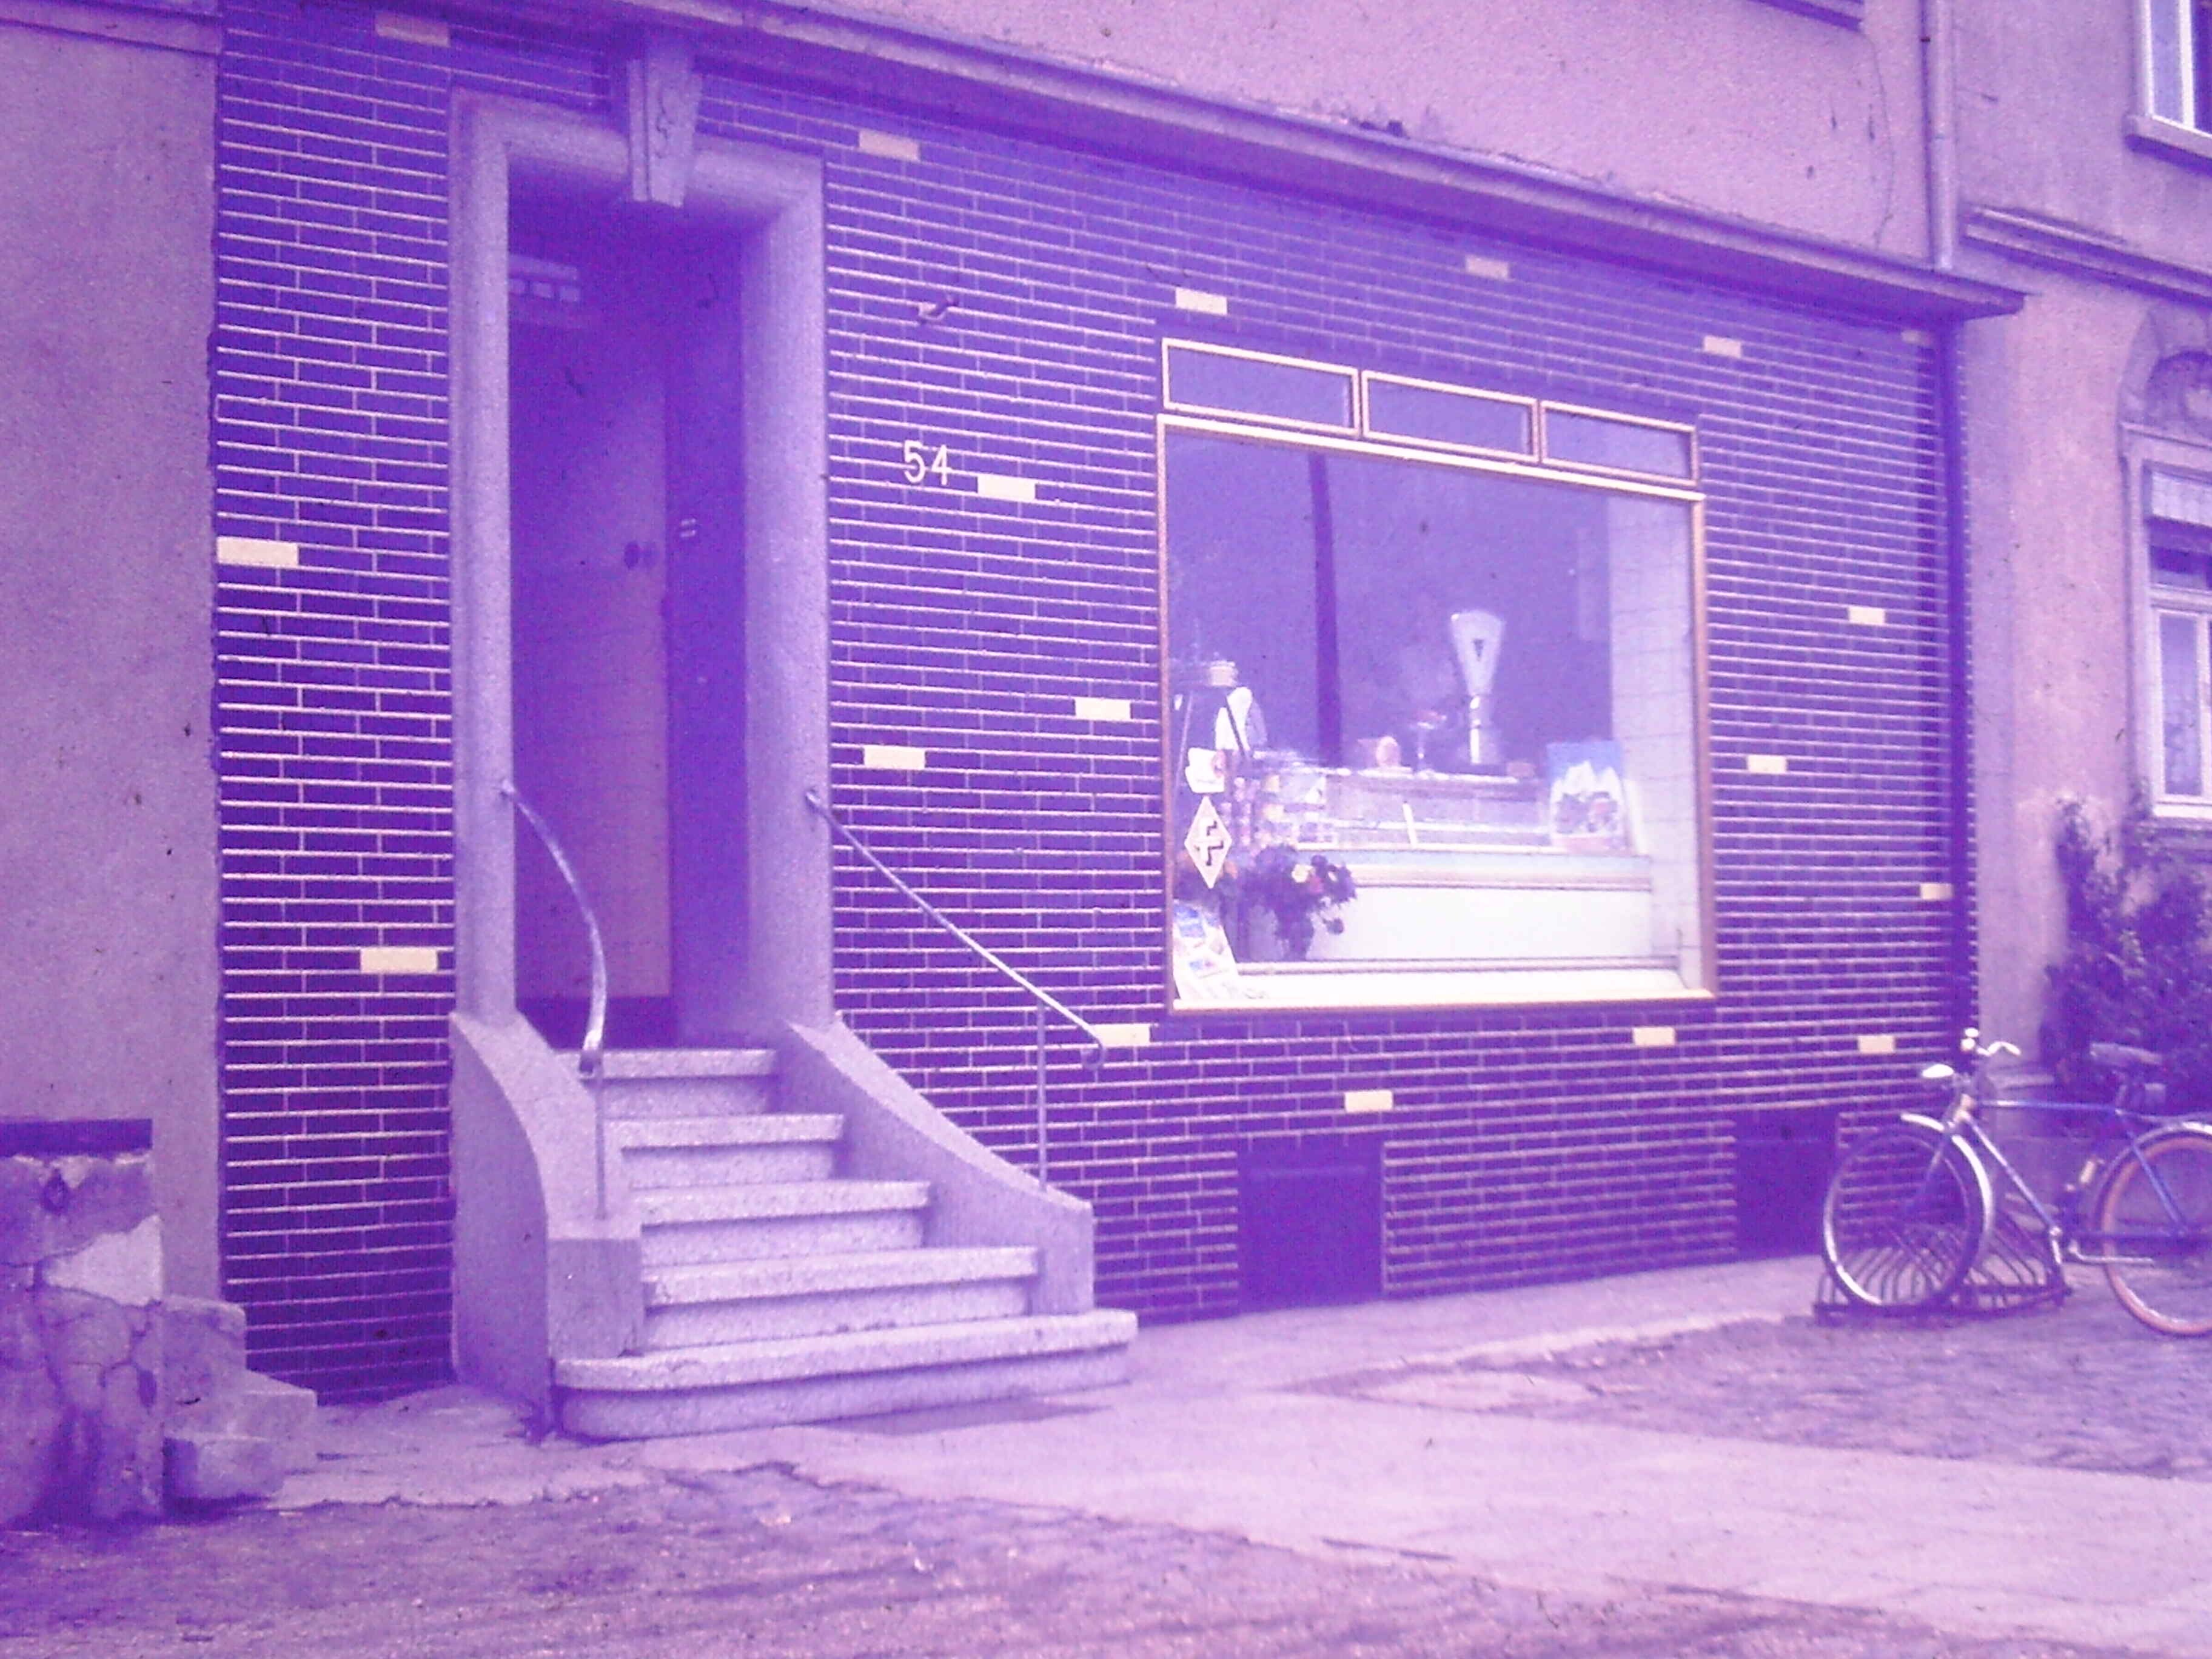 Geschäft | Hüttenstraße 54 | Metzgerei Welt | circa 1960 (Heimatmuseum Sindorf CC BY-NC-SA)